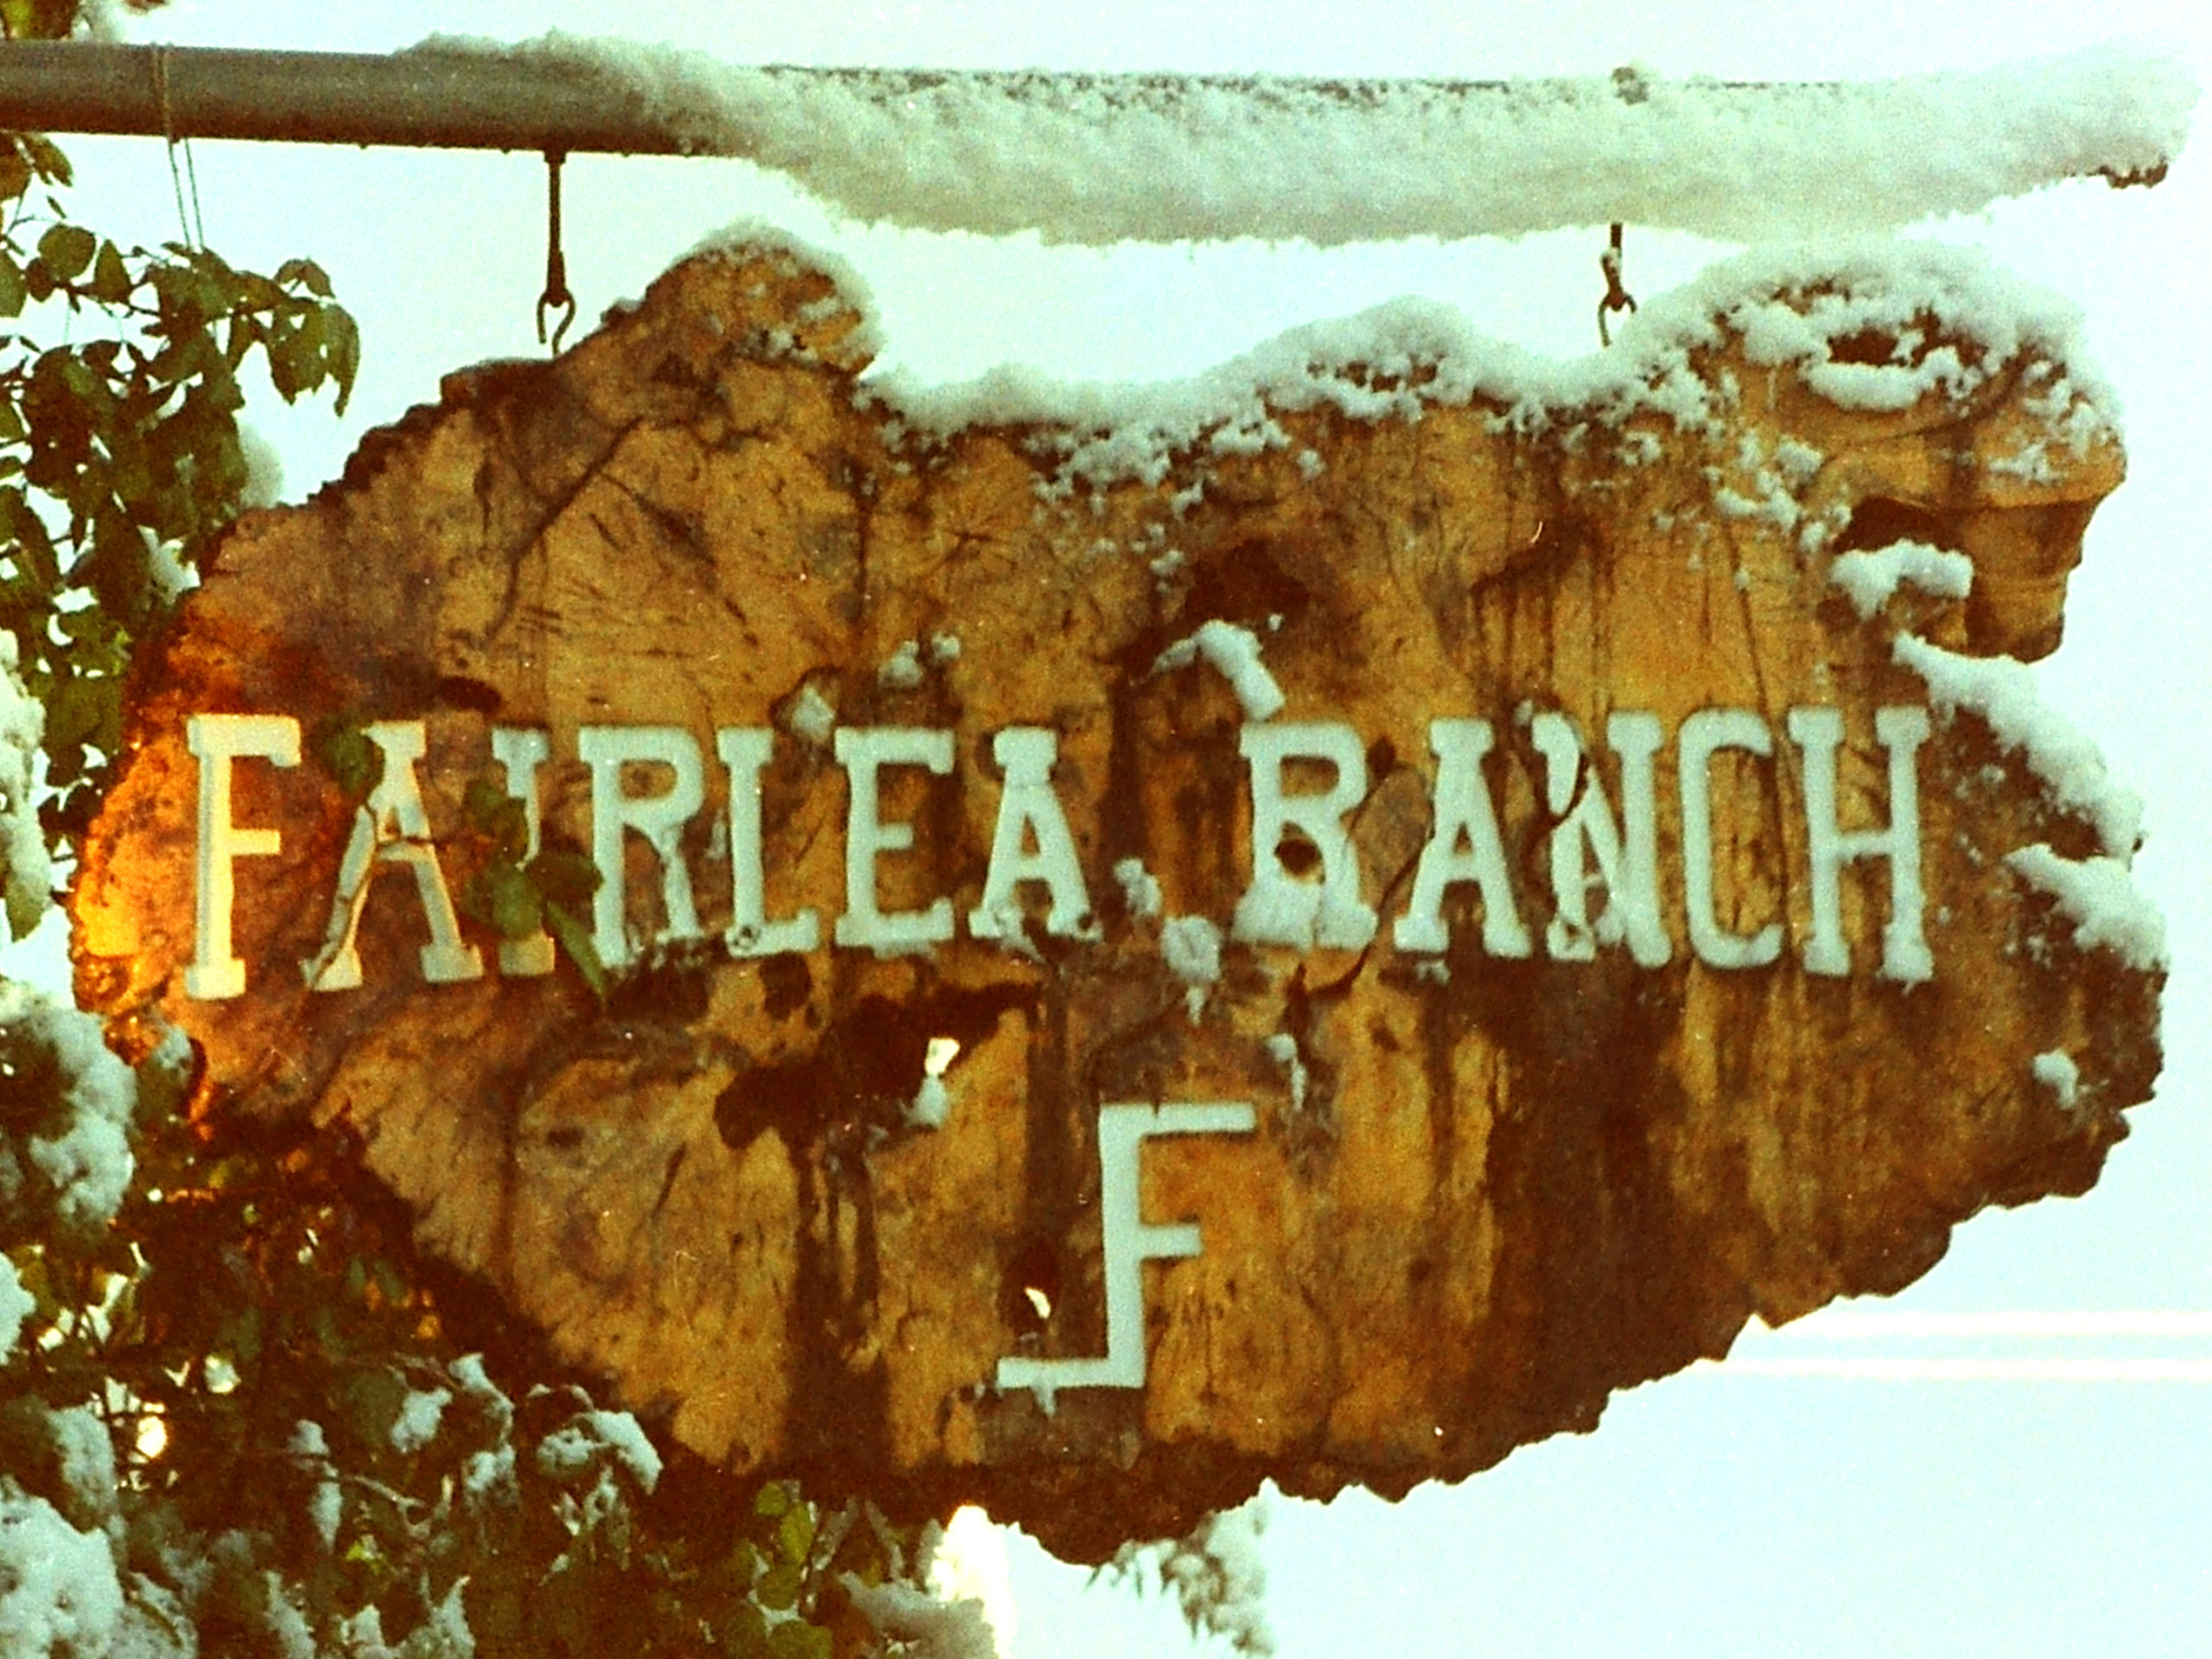 Fairlea Ranch